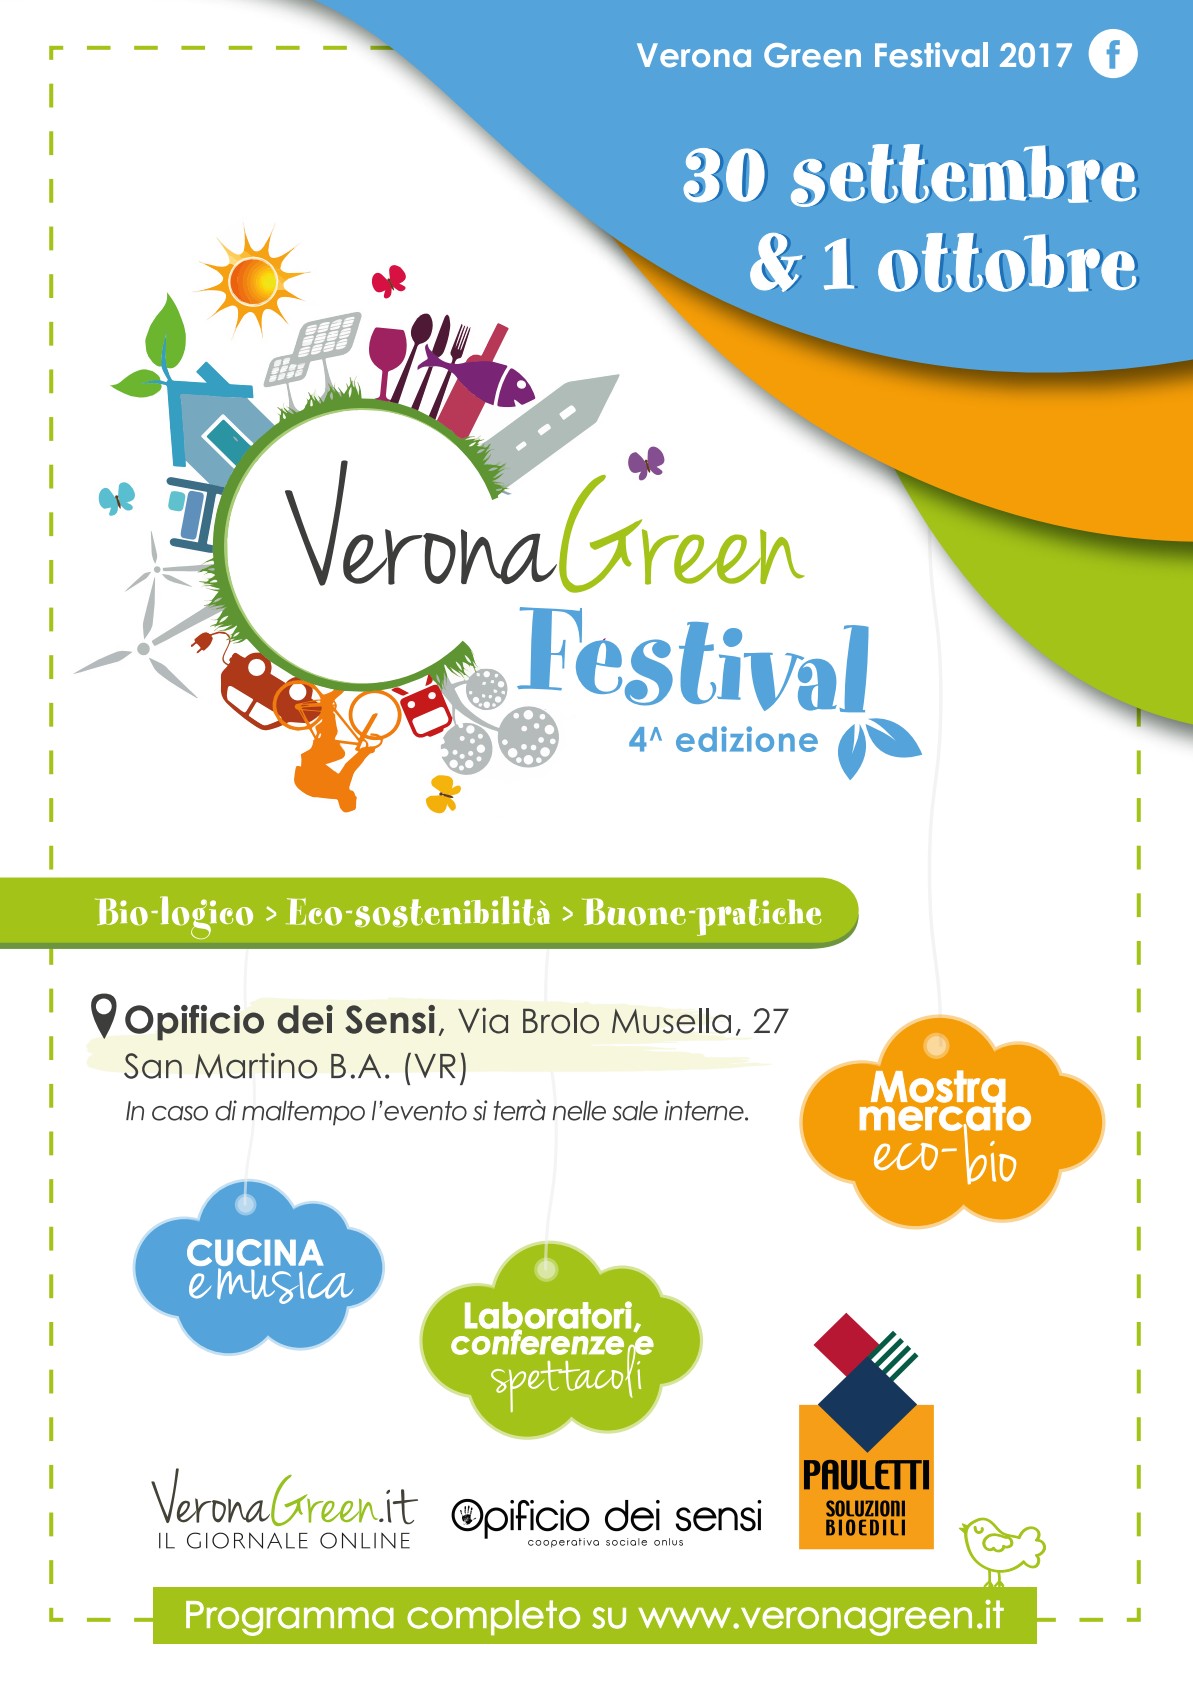 Verona Green Festival